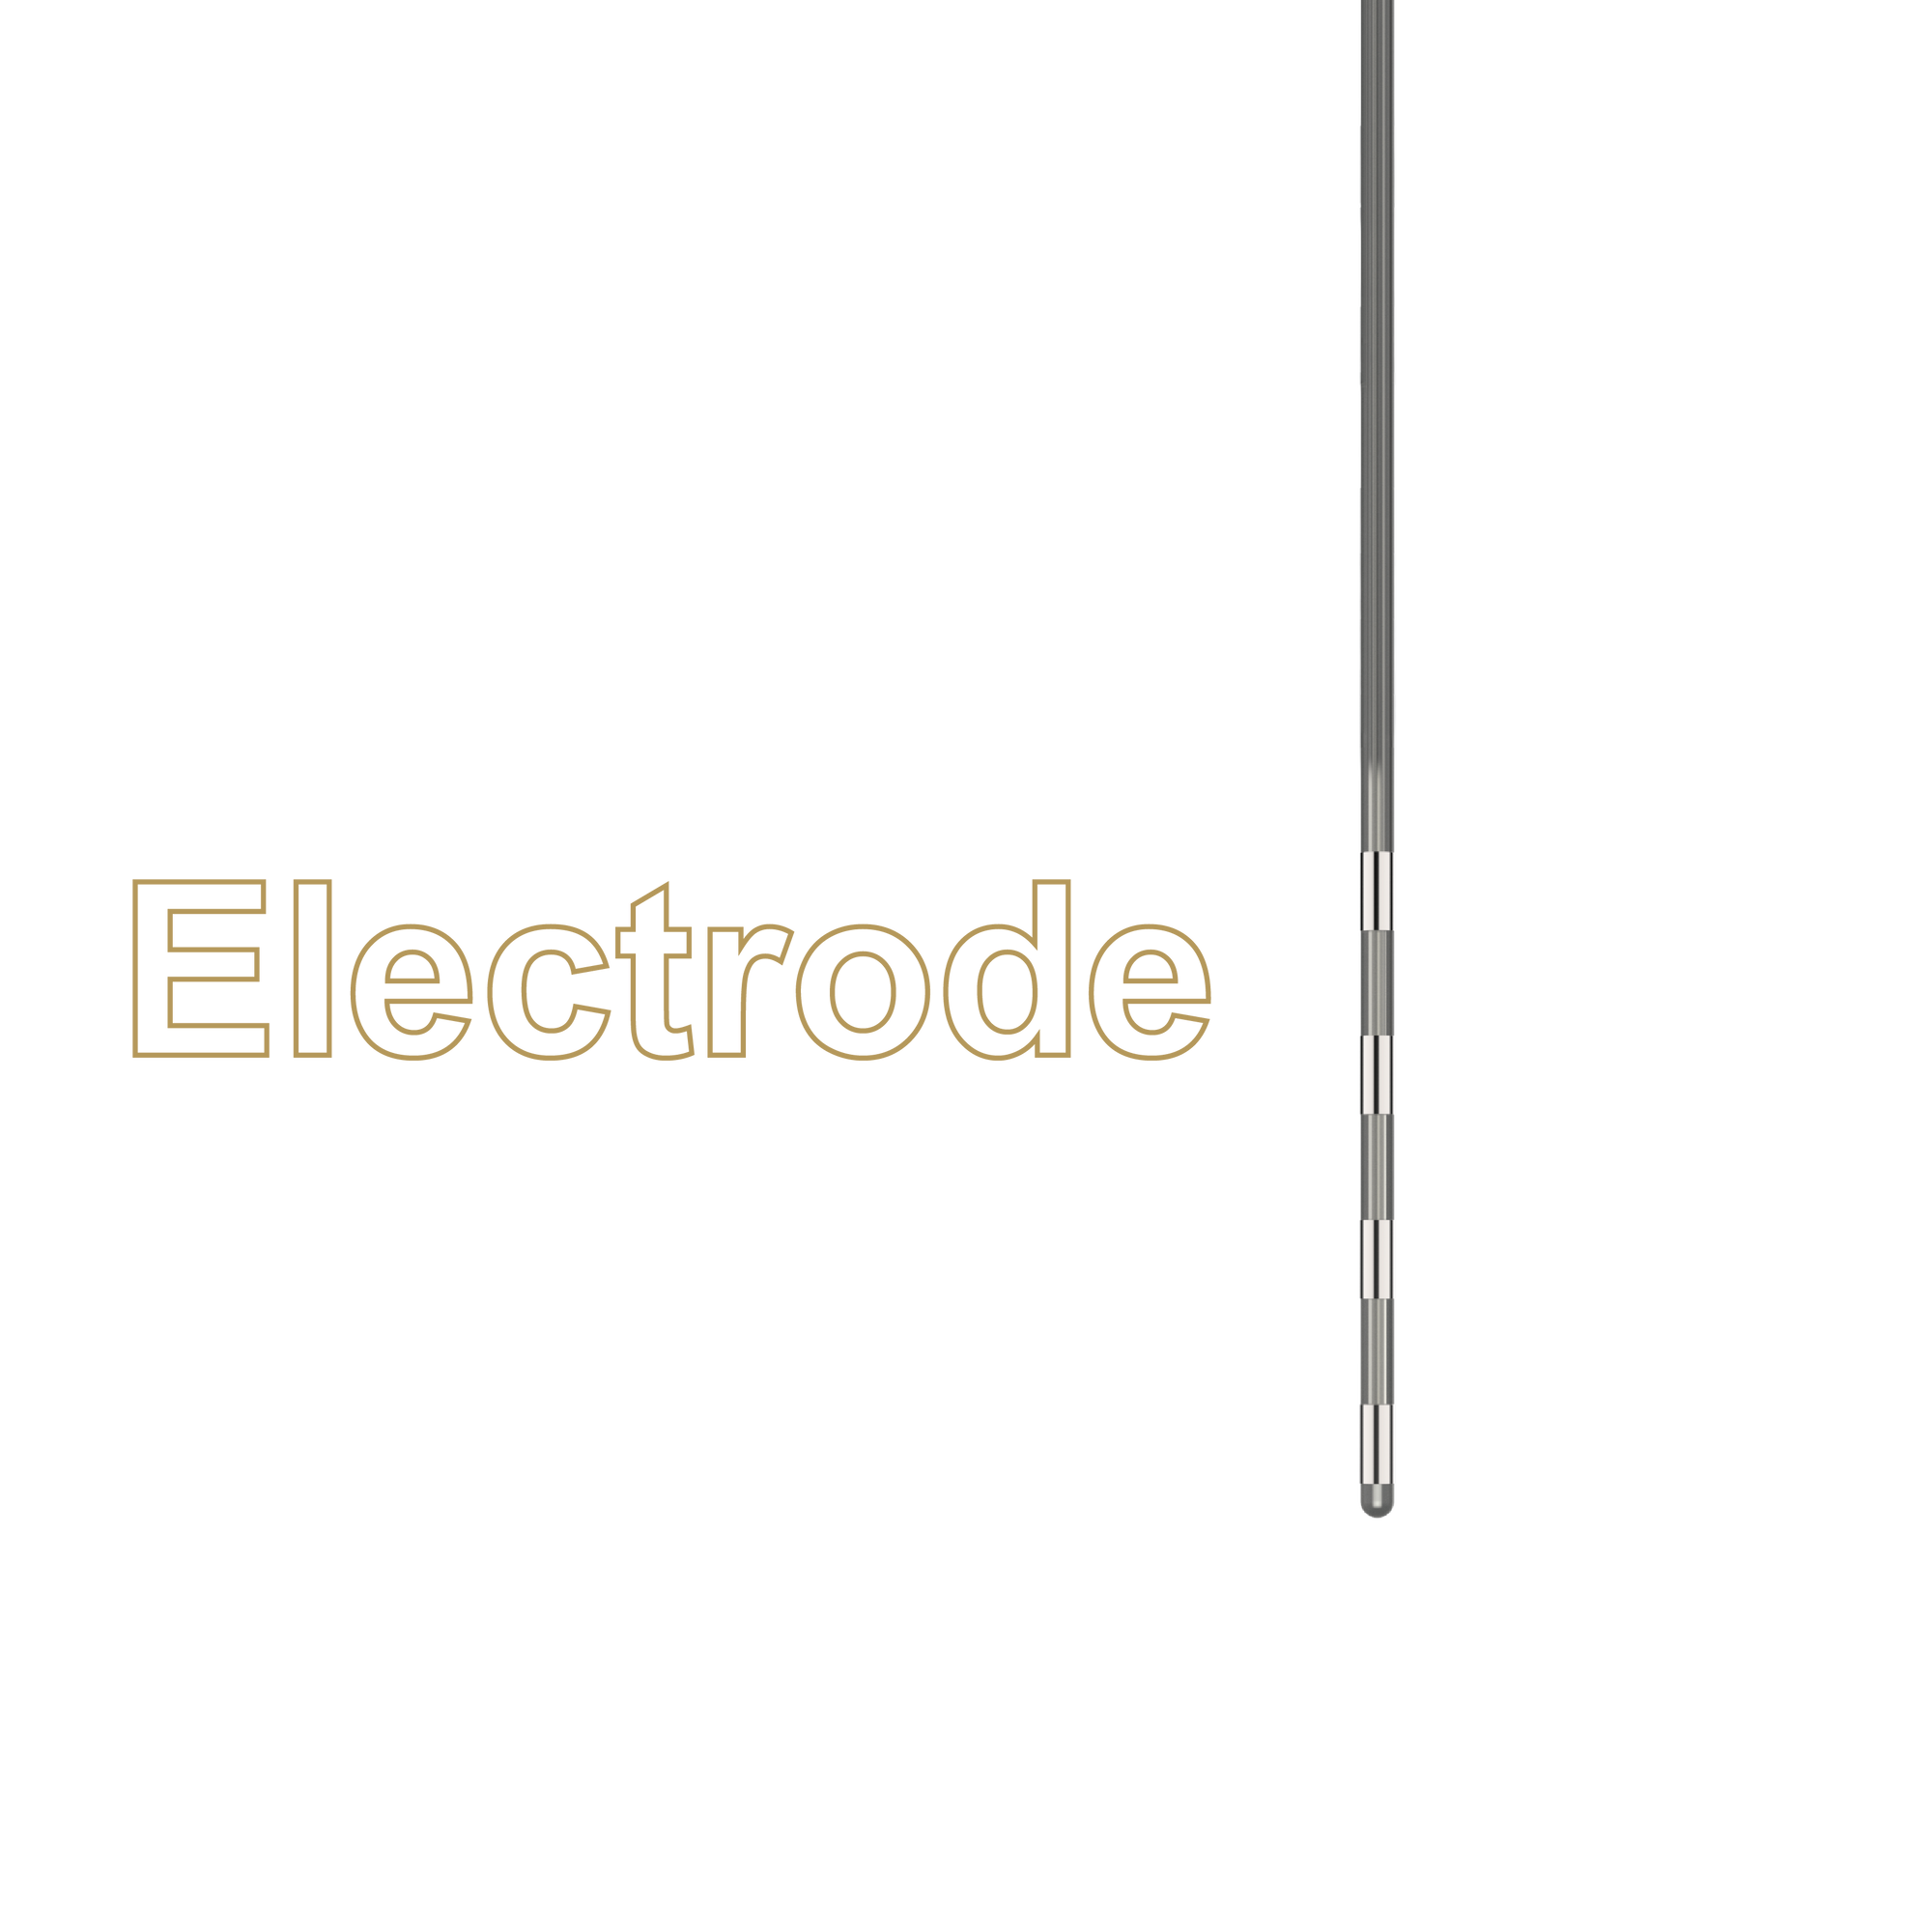 Percutaneous electrode (1x4)